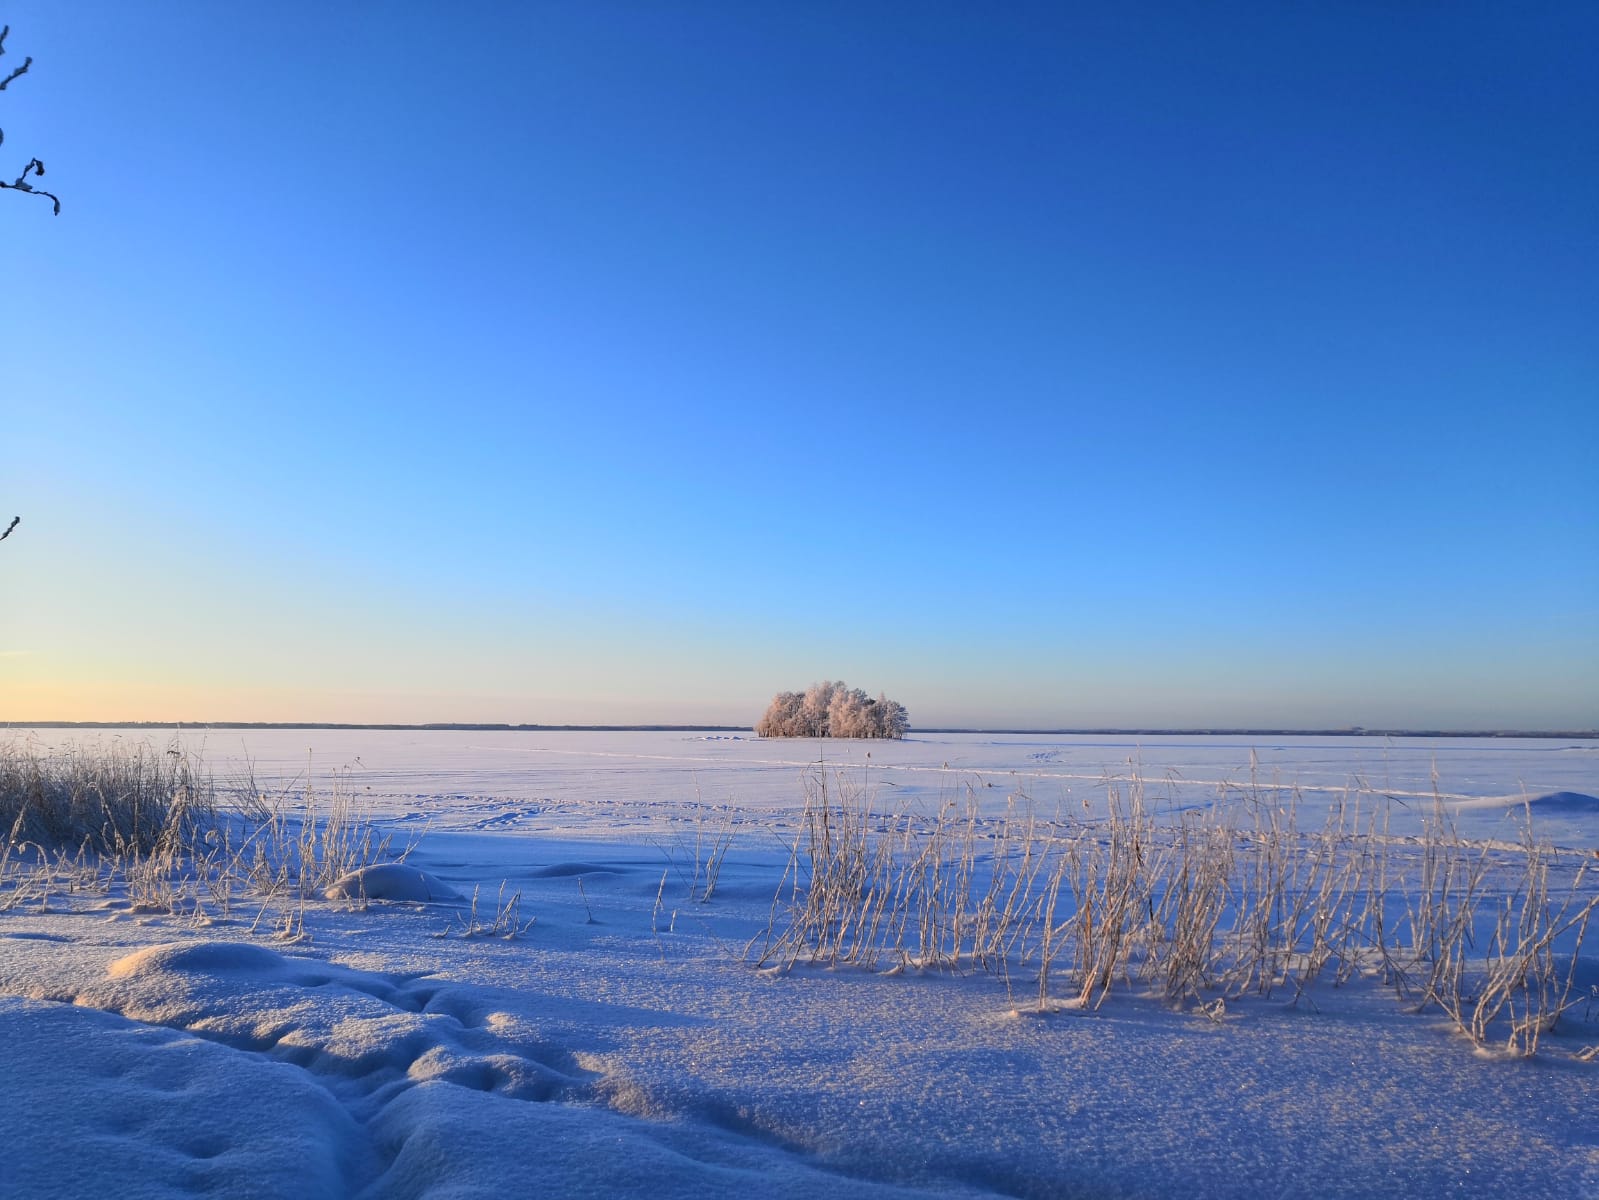 I momenti blu in Finlandia d'inverno, quando la neve rispecchia il cielo azzurro